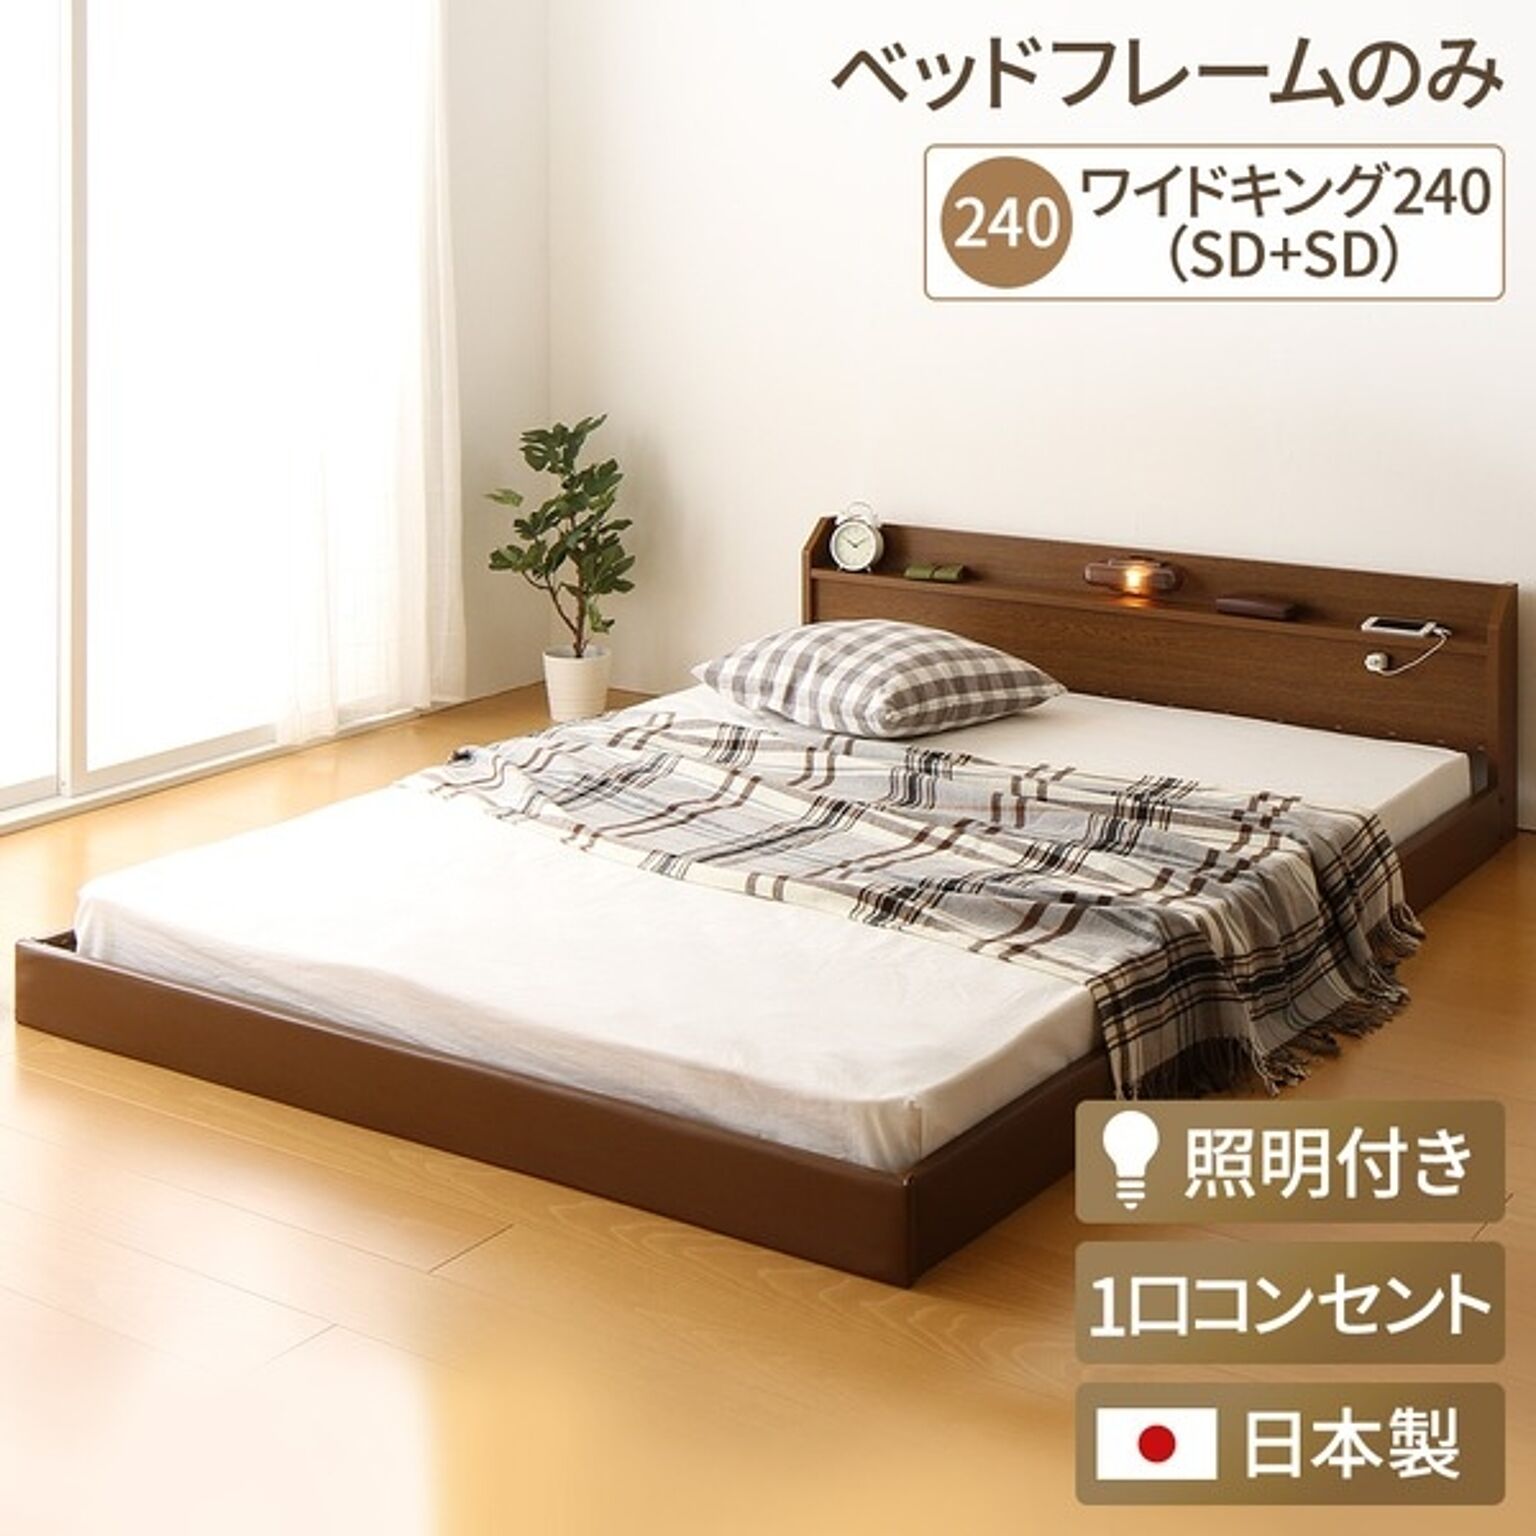 ファミリー ベッド 連結ベッド ワイドK240 SD×2 大型ベッド ローベッド